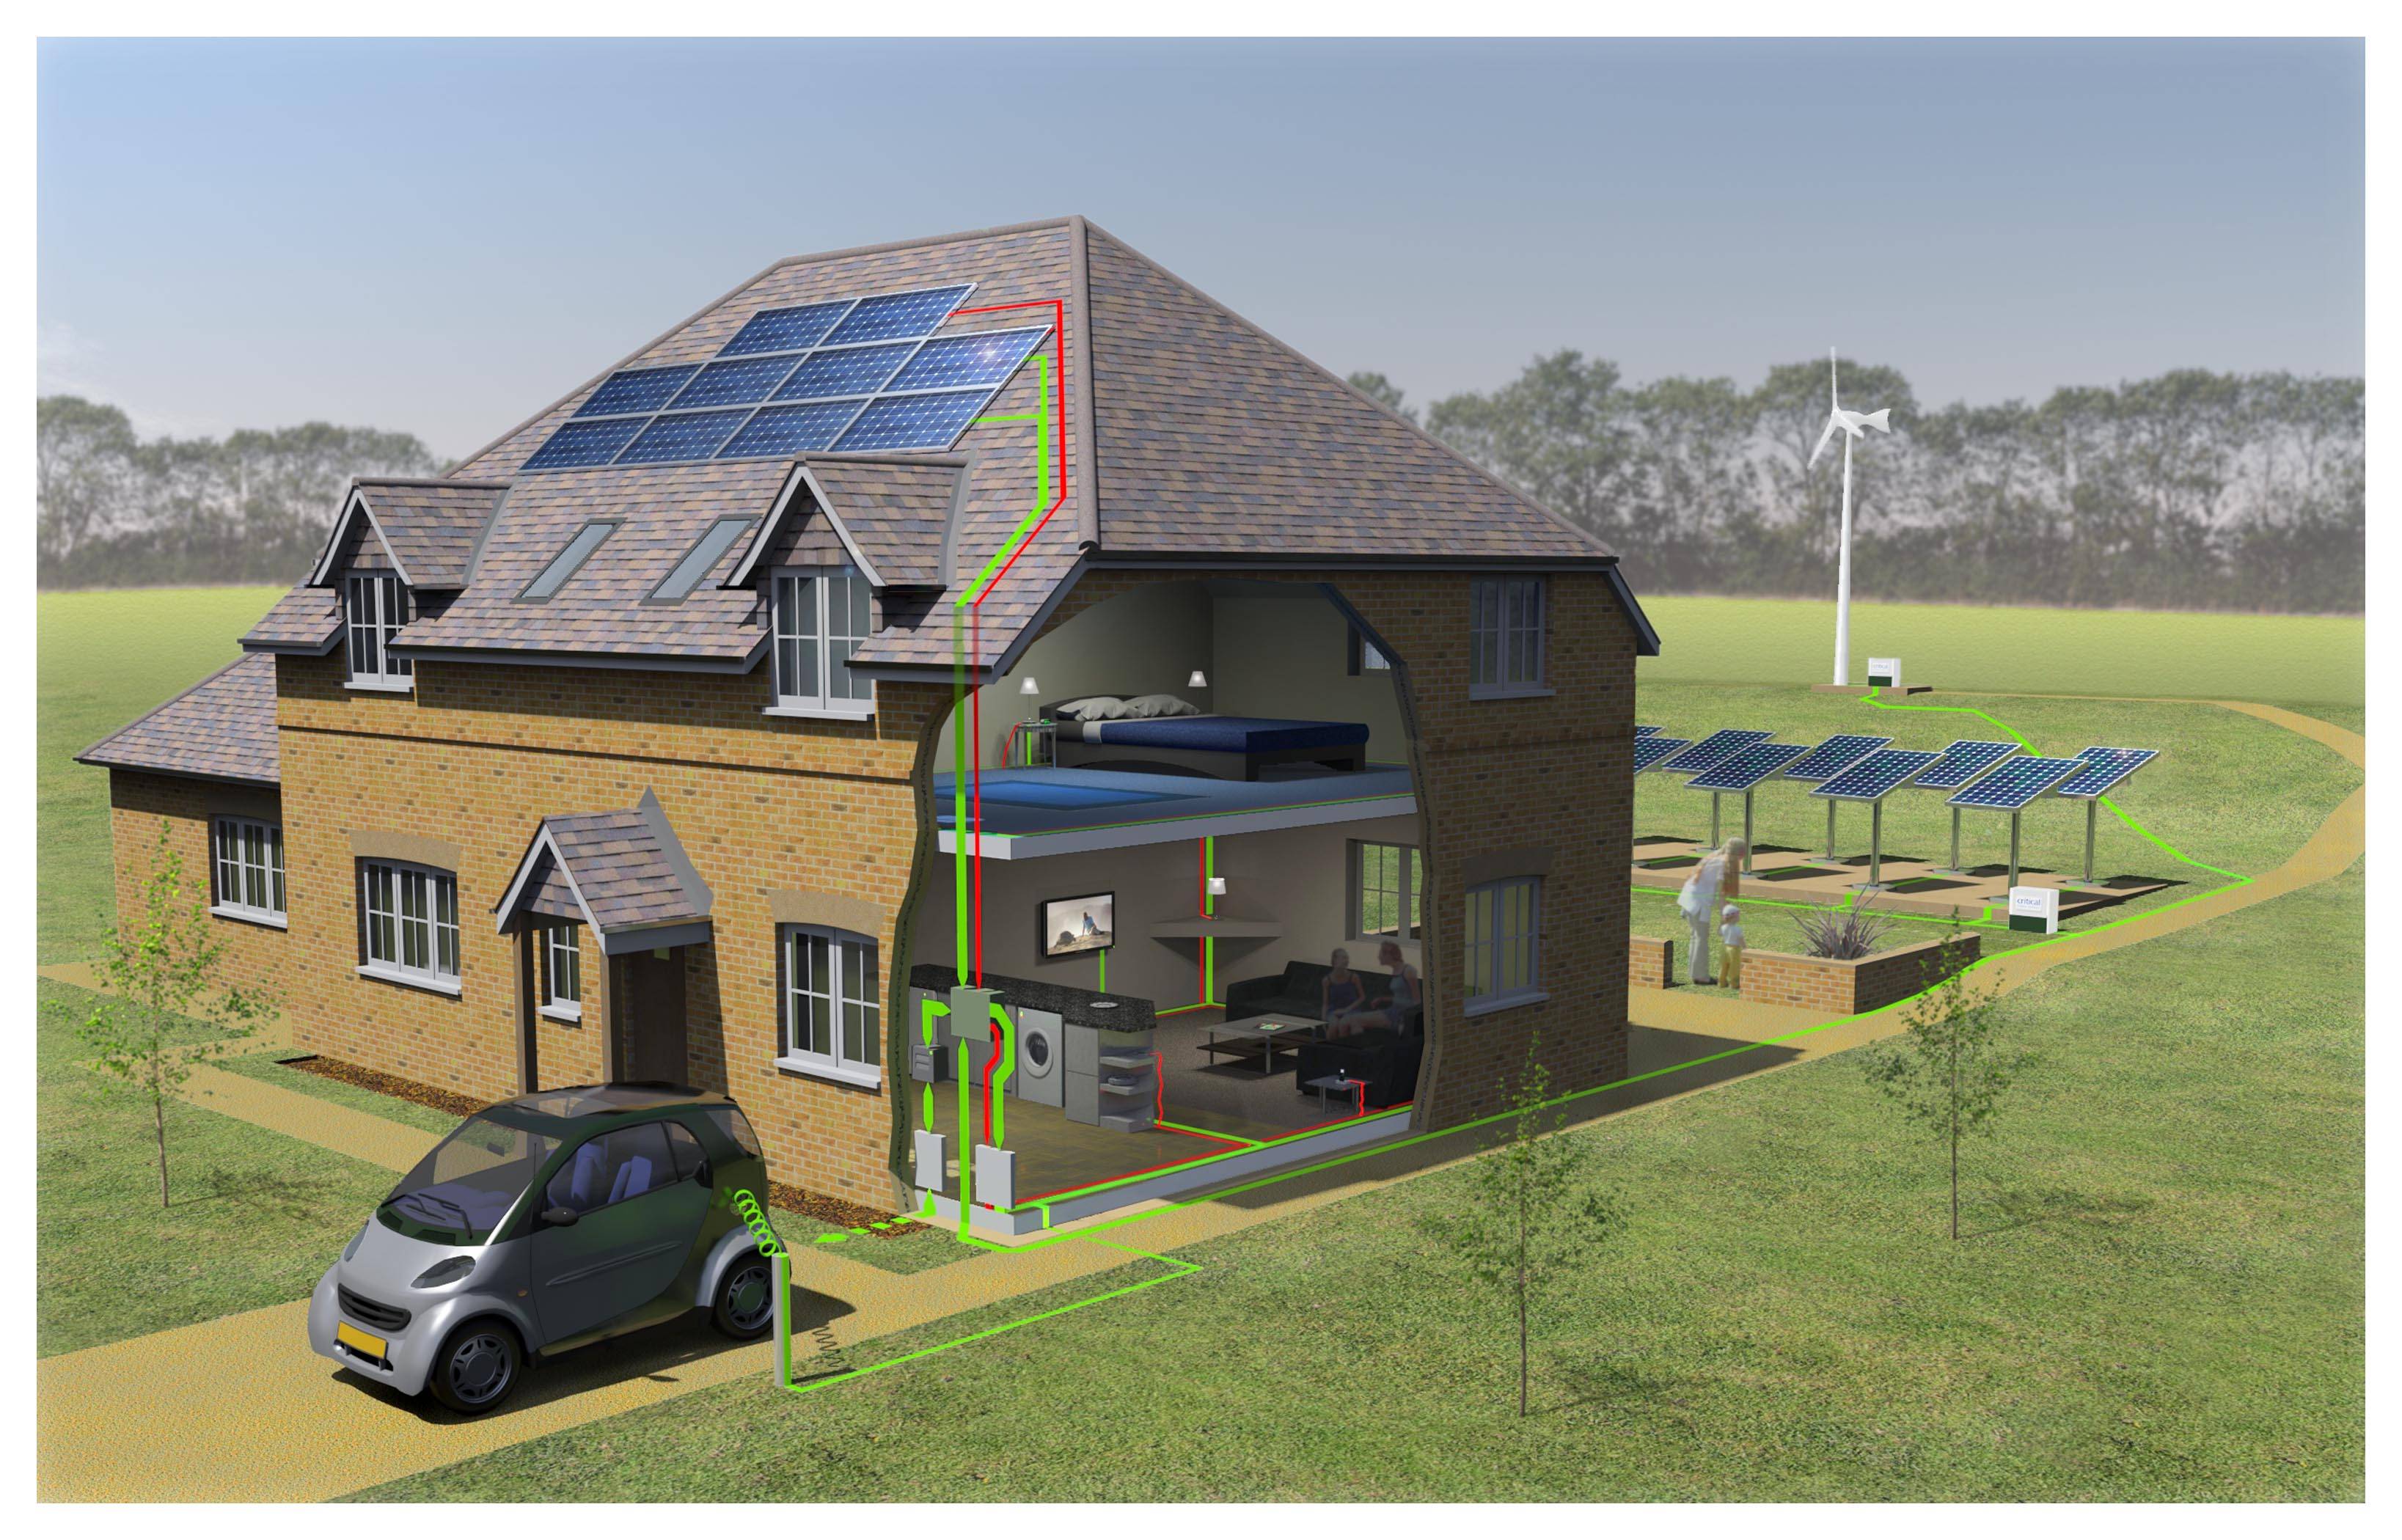 Оборудование энергоэффективного дома: биогаз, сбор воды, др.